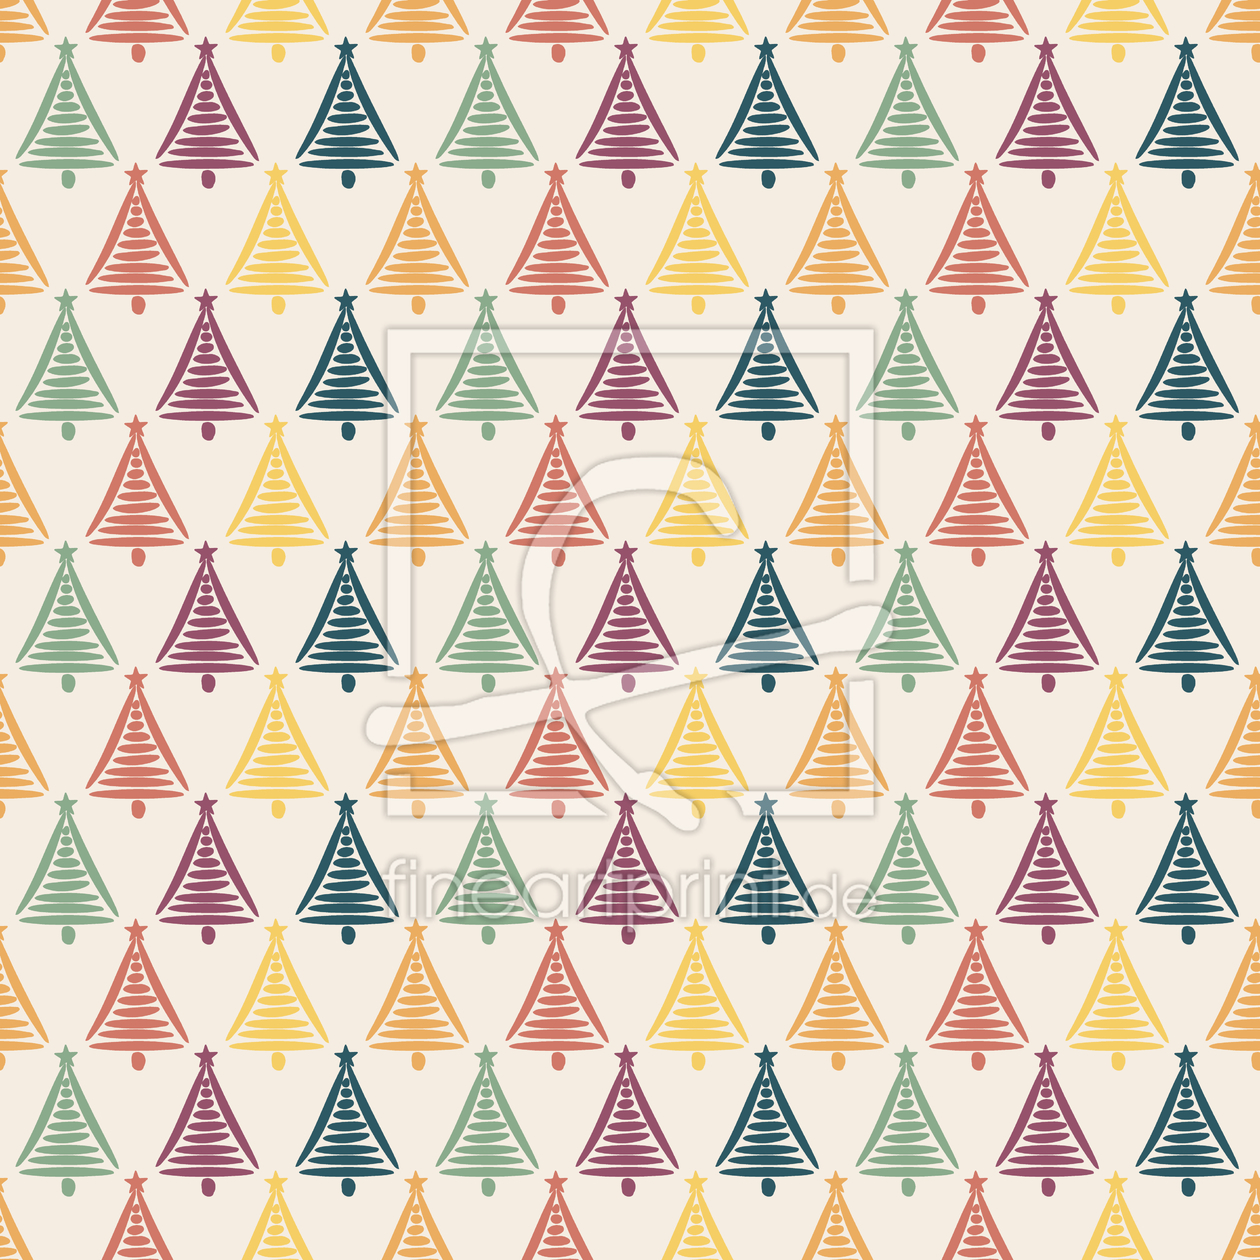 Bild-Nr.: 9011600 Gezeichneter Weihnachtsbaum erstellt von patterndesigns-com